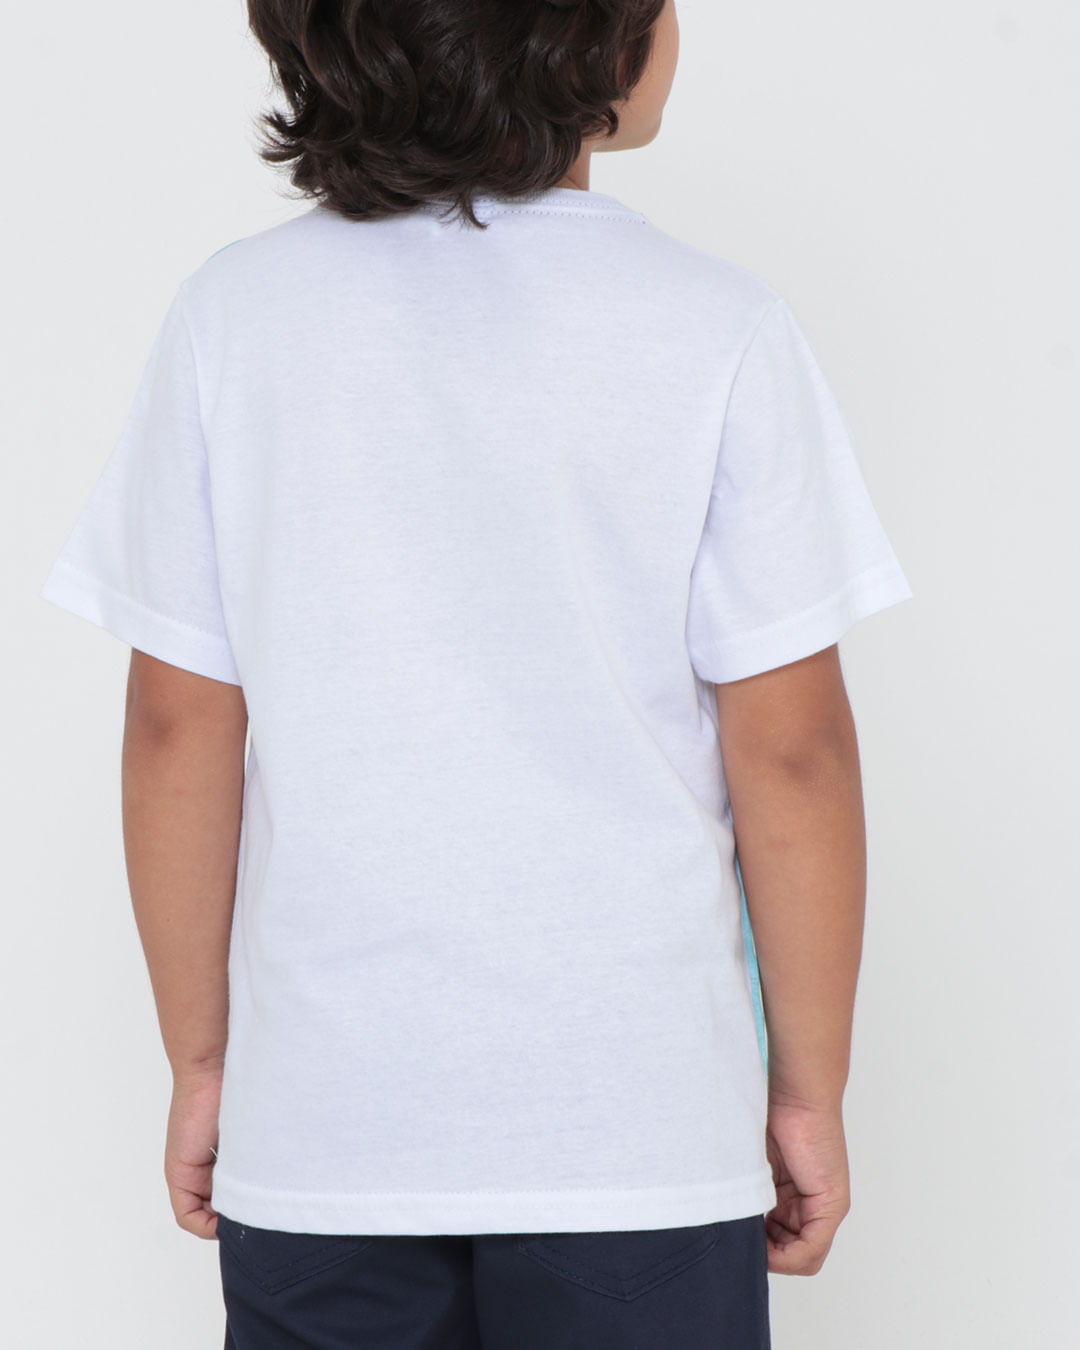 Camiseta-Mcinf105-Mc-M48-Tropic---Branco